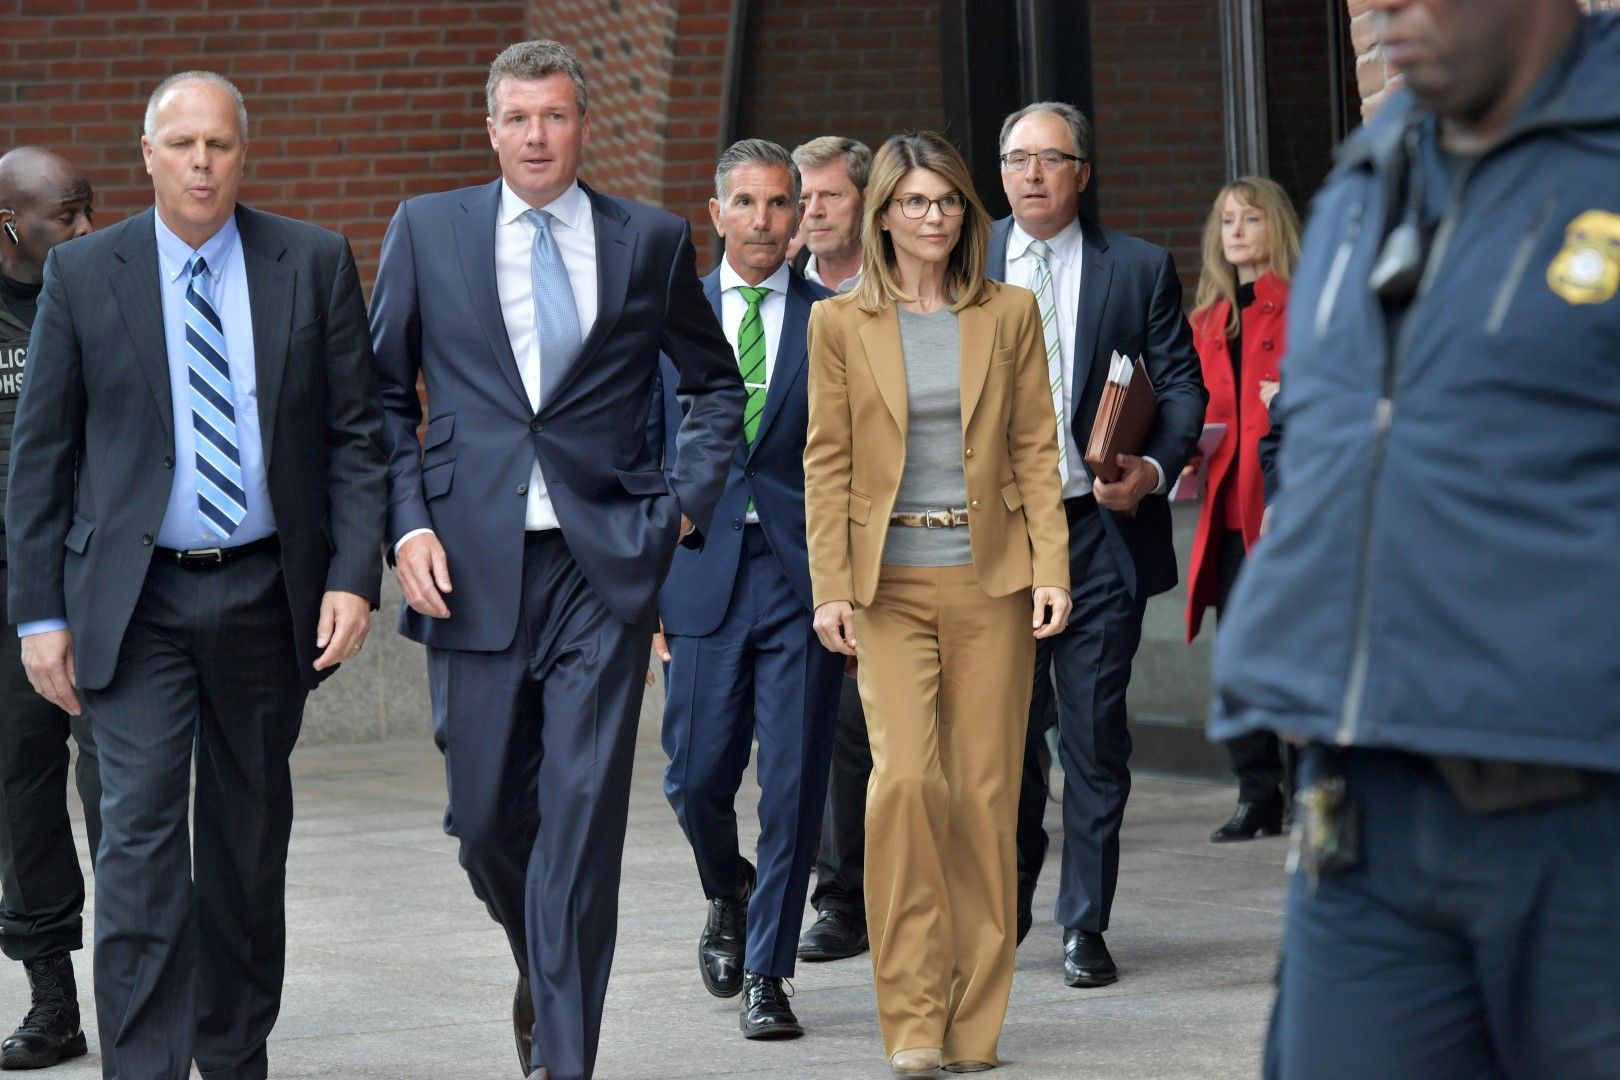 Лори Логлин напуска съда в Бостън след изслушването обвиненията в университетския корупционен скандал през април